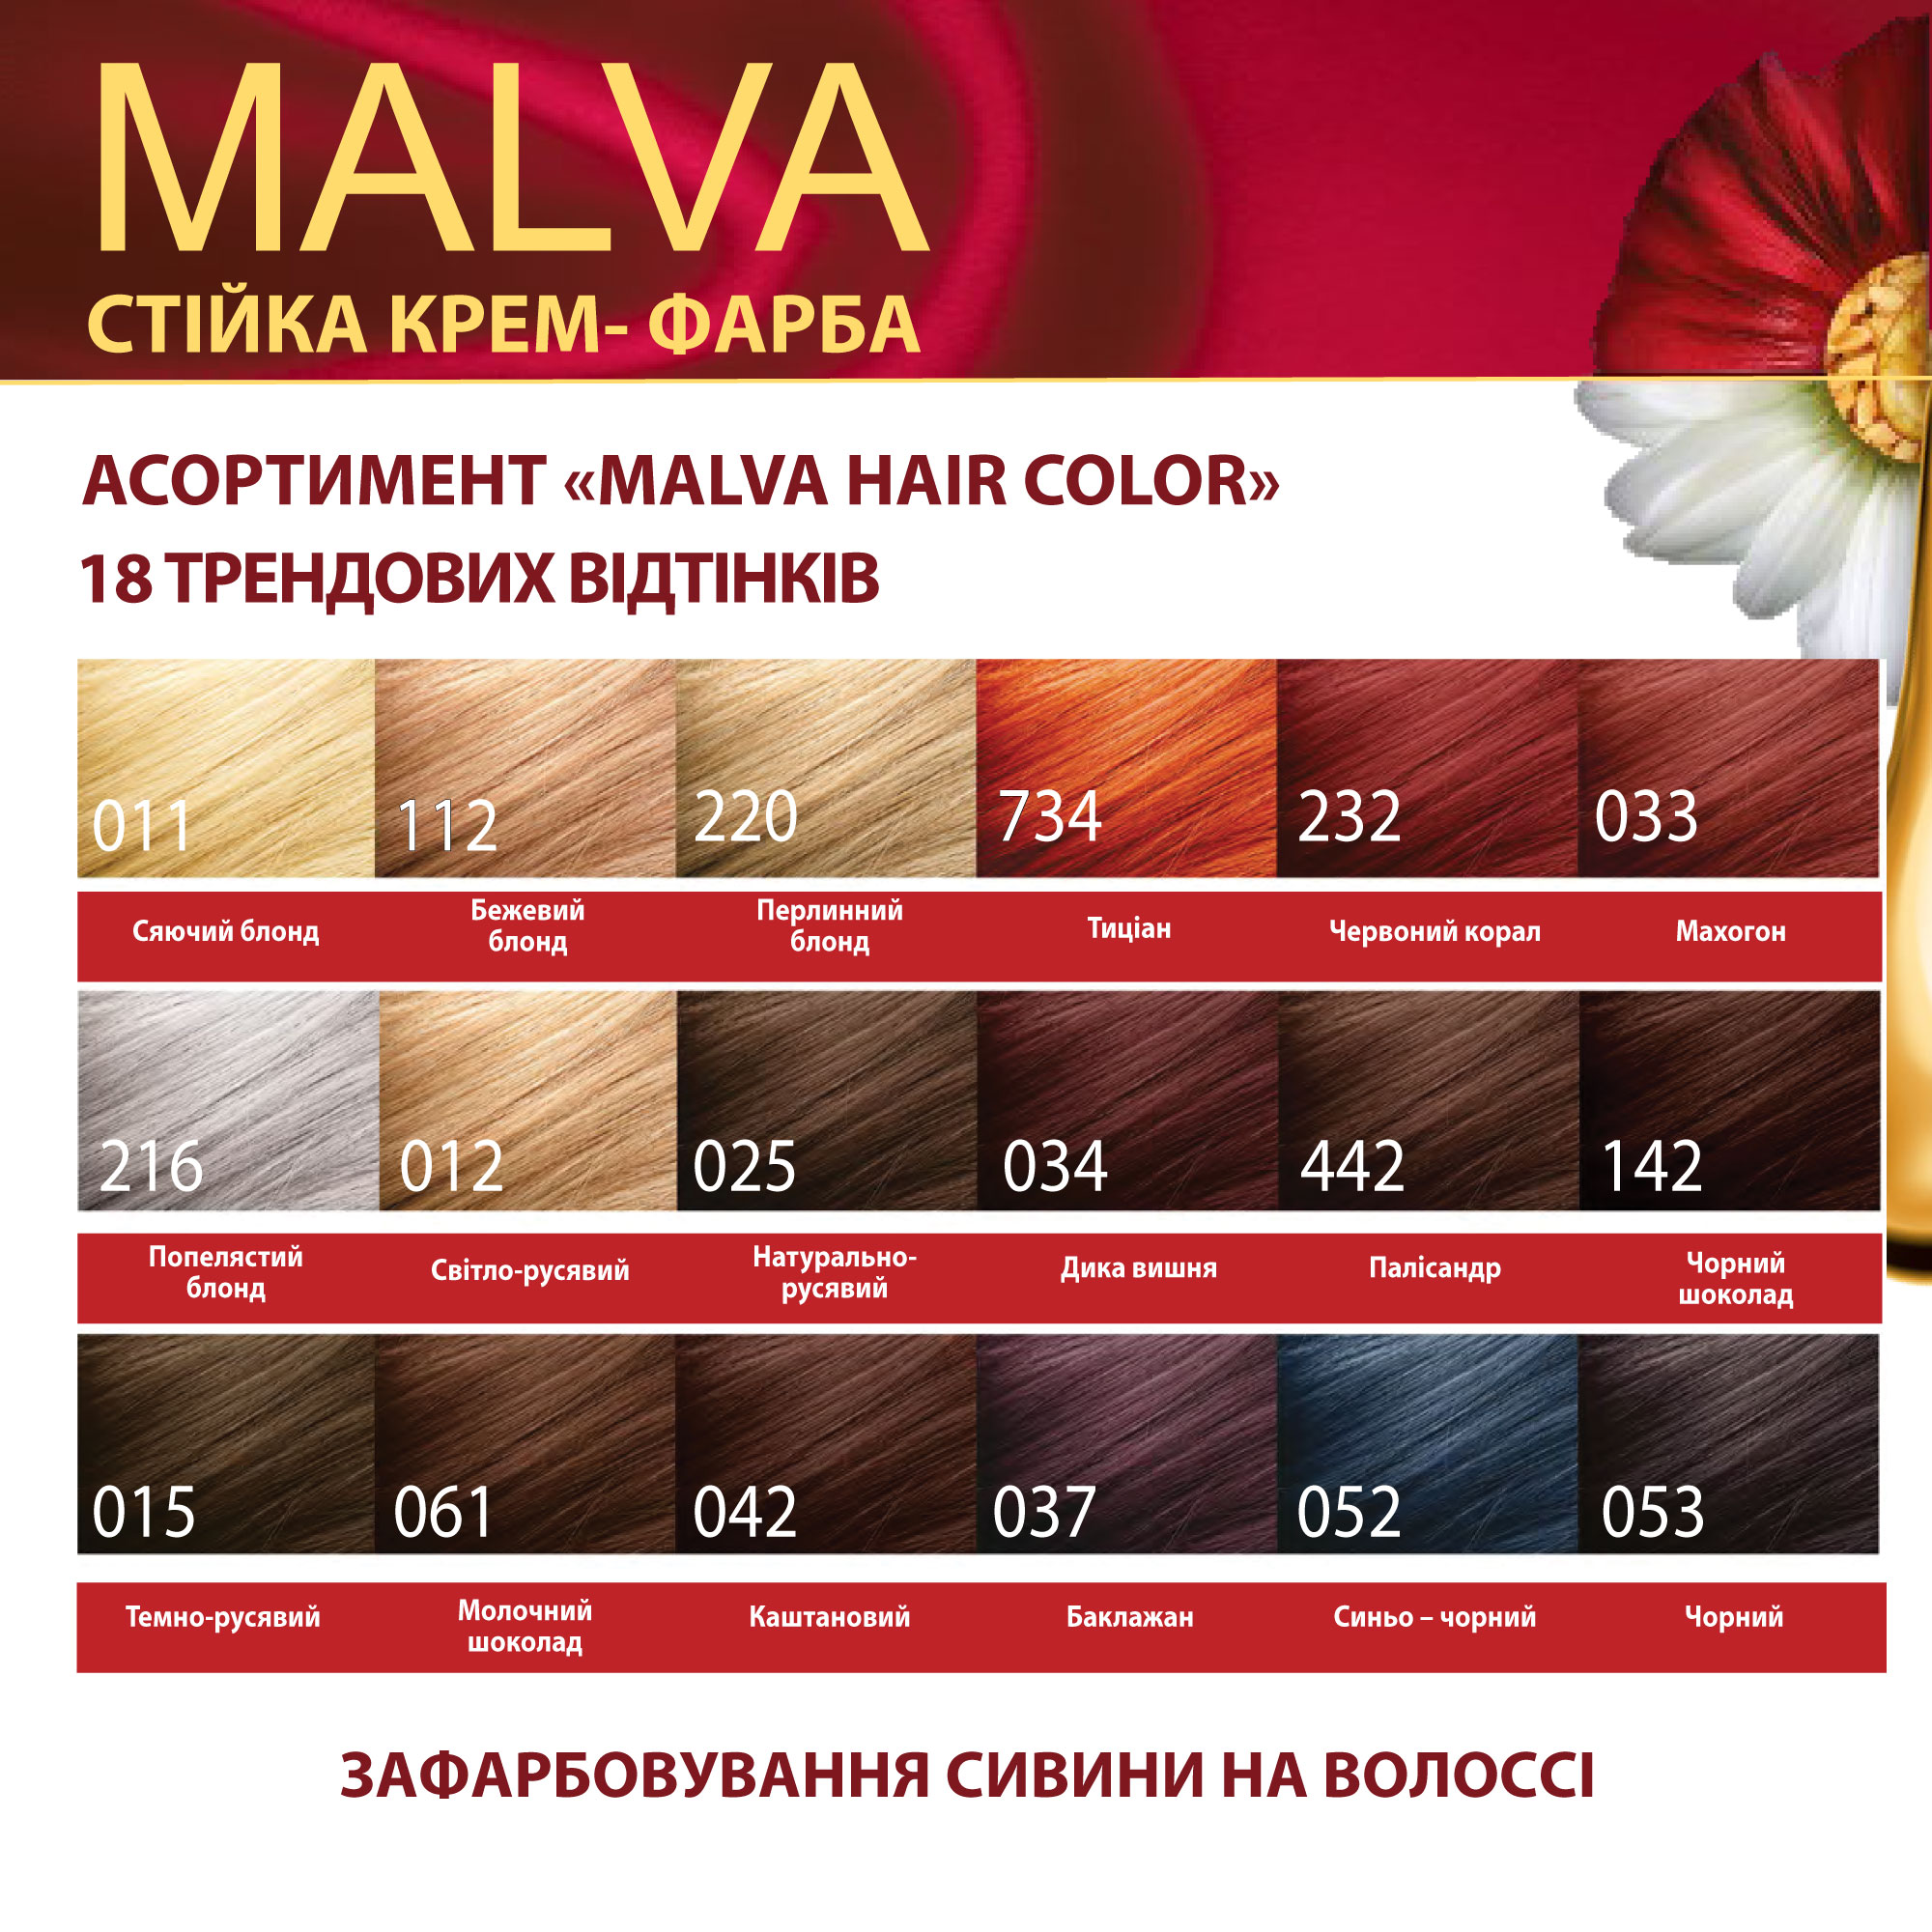 Крем-фарба для волосся Acme Color Malva, відтінок 033 (Махагон), 95 мл - фото 6